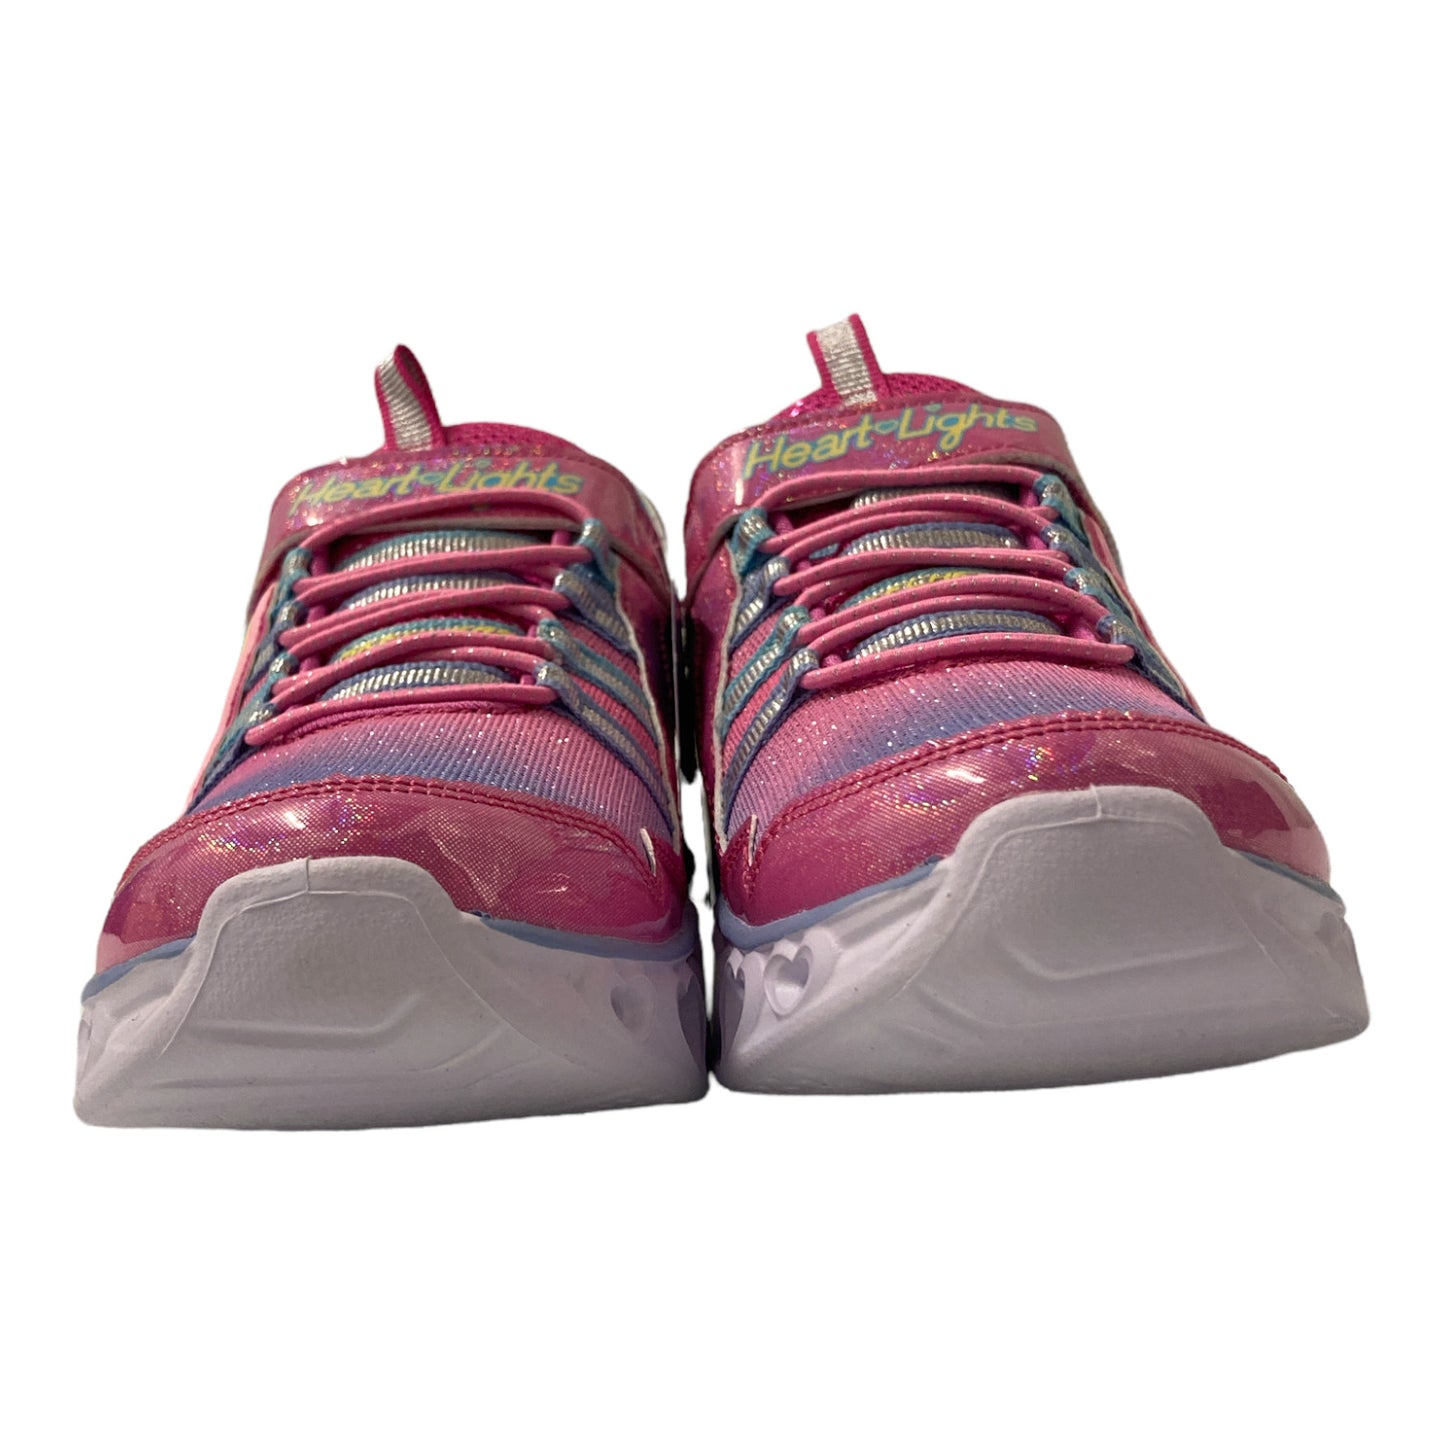 Skechers Girl's Lightweight Heart Lights Shimmery Rainbow Lux Sneaker